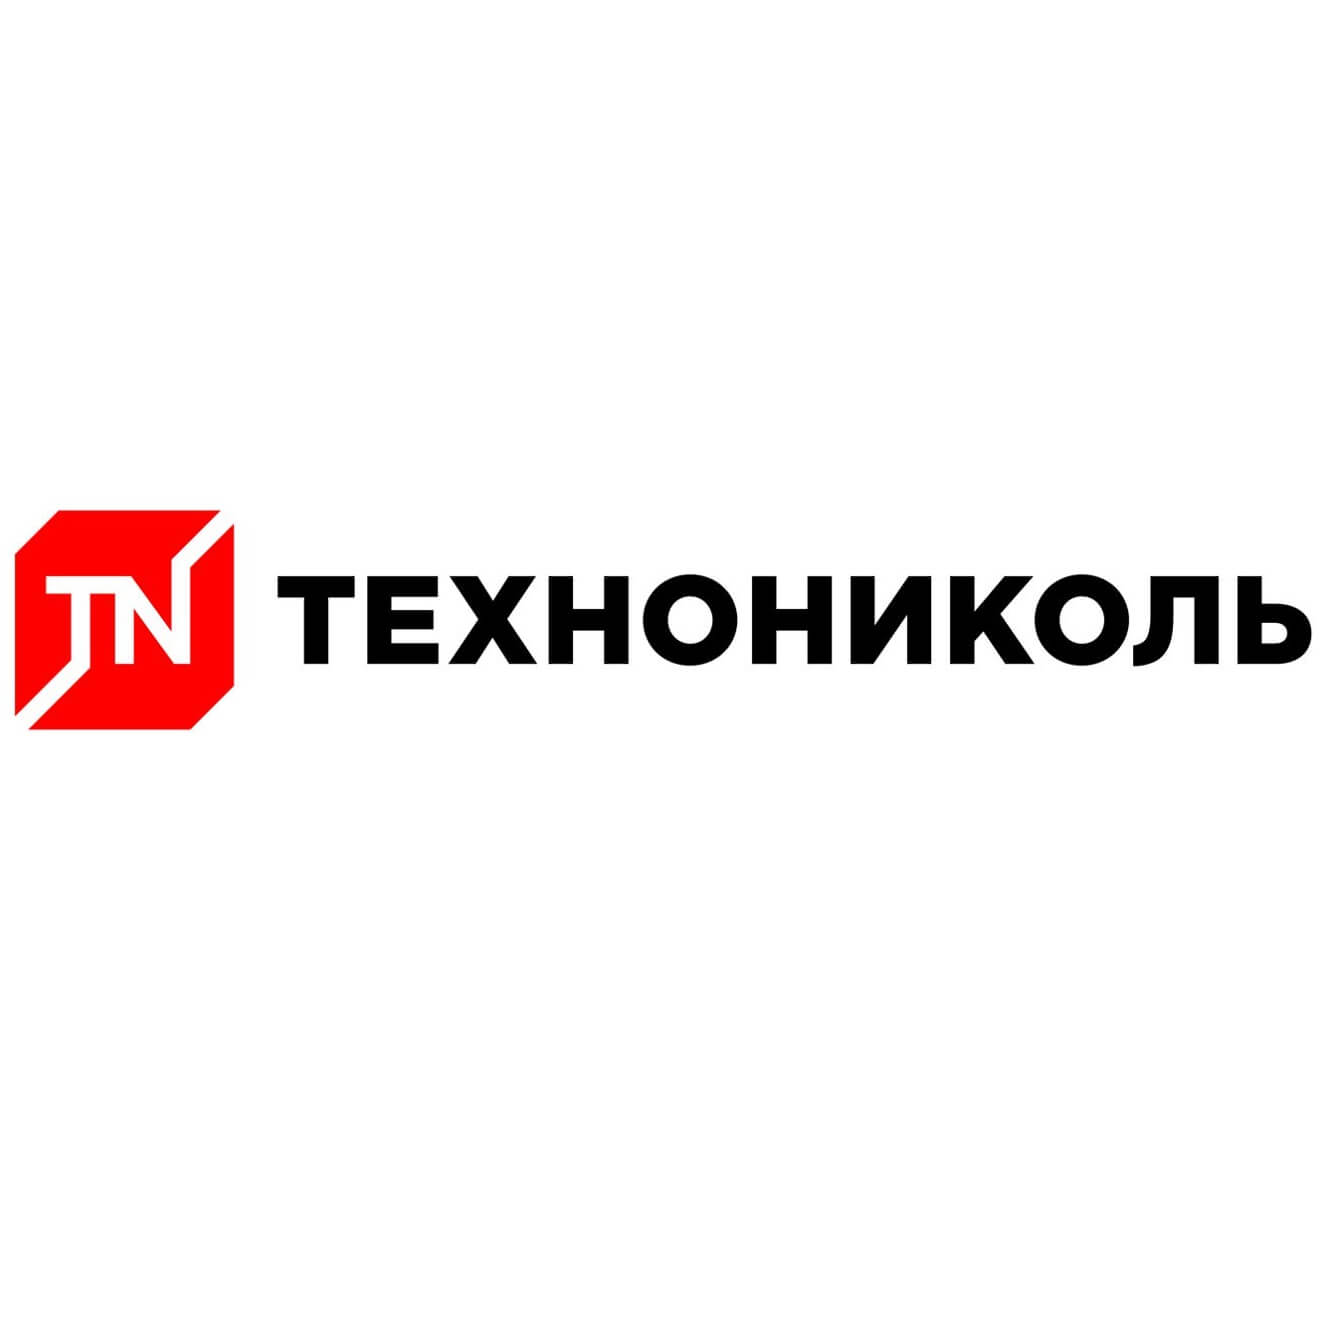 ТД "ФКТ" - официальный торговый партнер производственной компании "Технониколь".